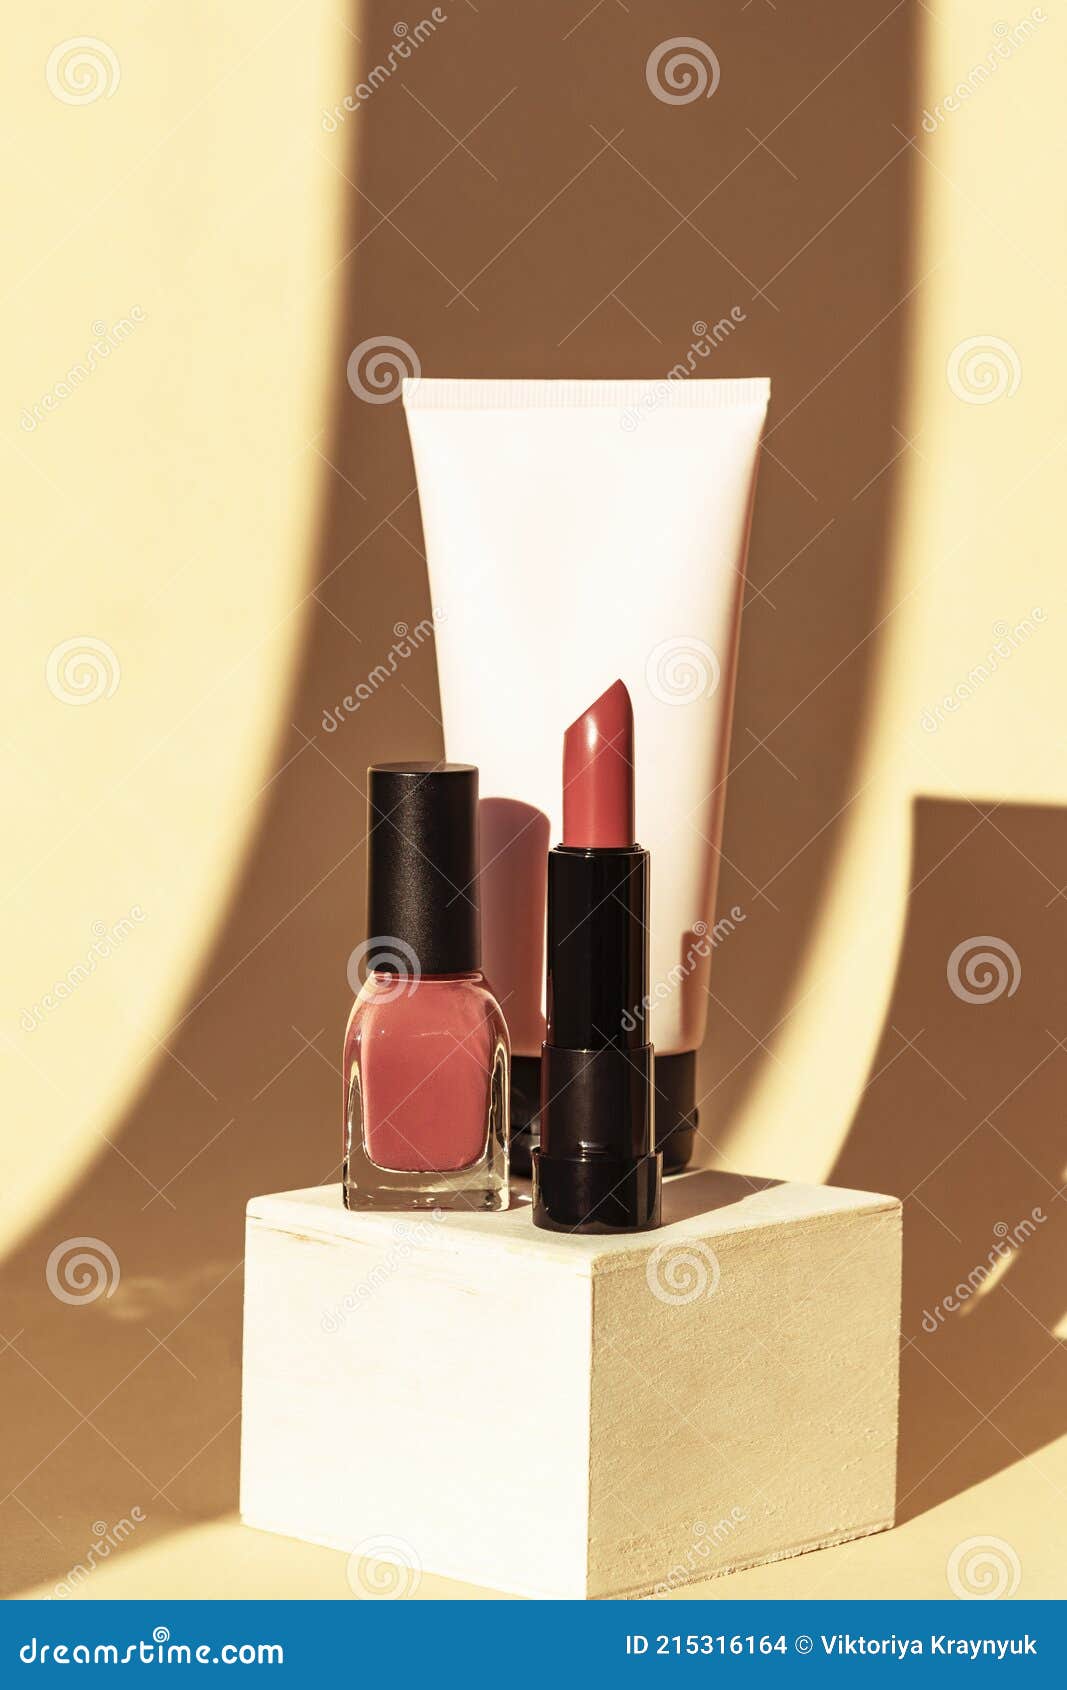 Aimeili Clear Acrylic Nail Polish Lipsticks Display Stand Holder Rack –  AIMEILI GEL POLISH